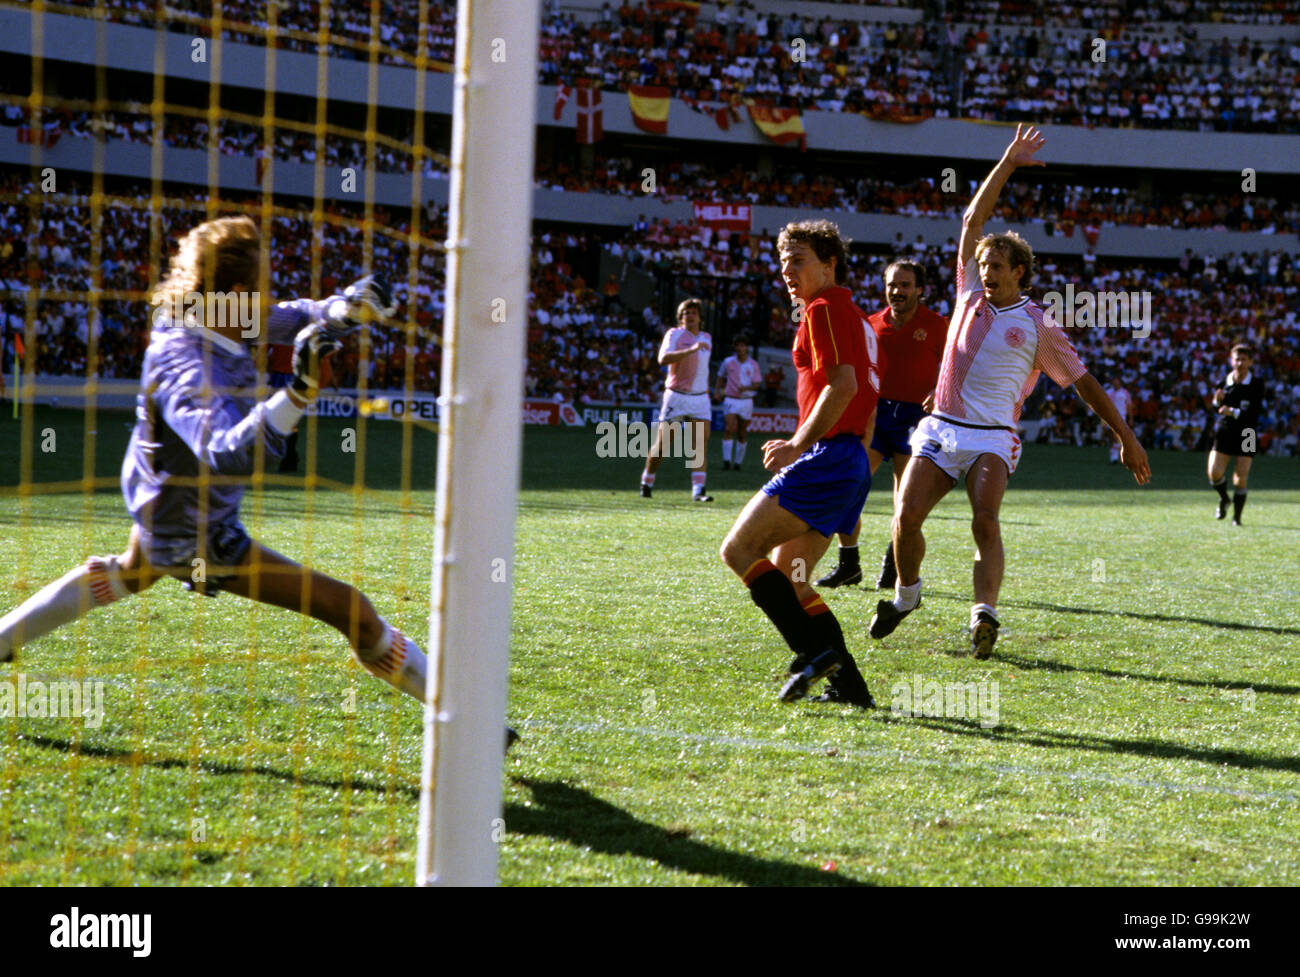 Calcio - Coppa del mondo Messico 86 - secondo turno - Danimarca / Spagna. Emilio Butragueno (centro) della Spagna segna uno dei suoi quattro gol Foto Stock